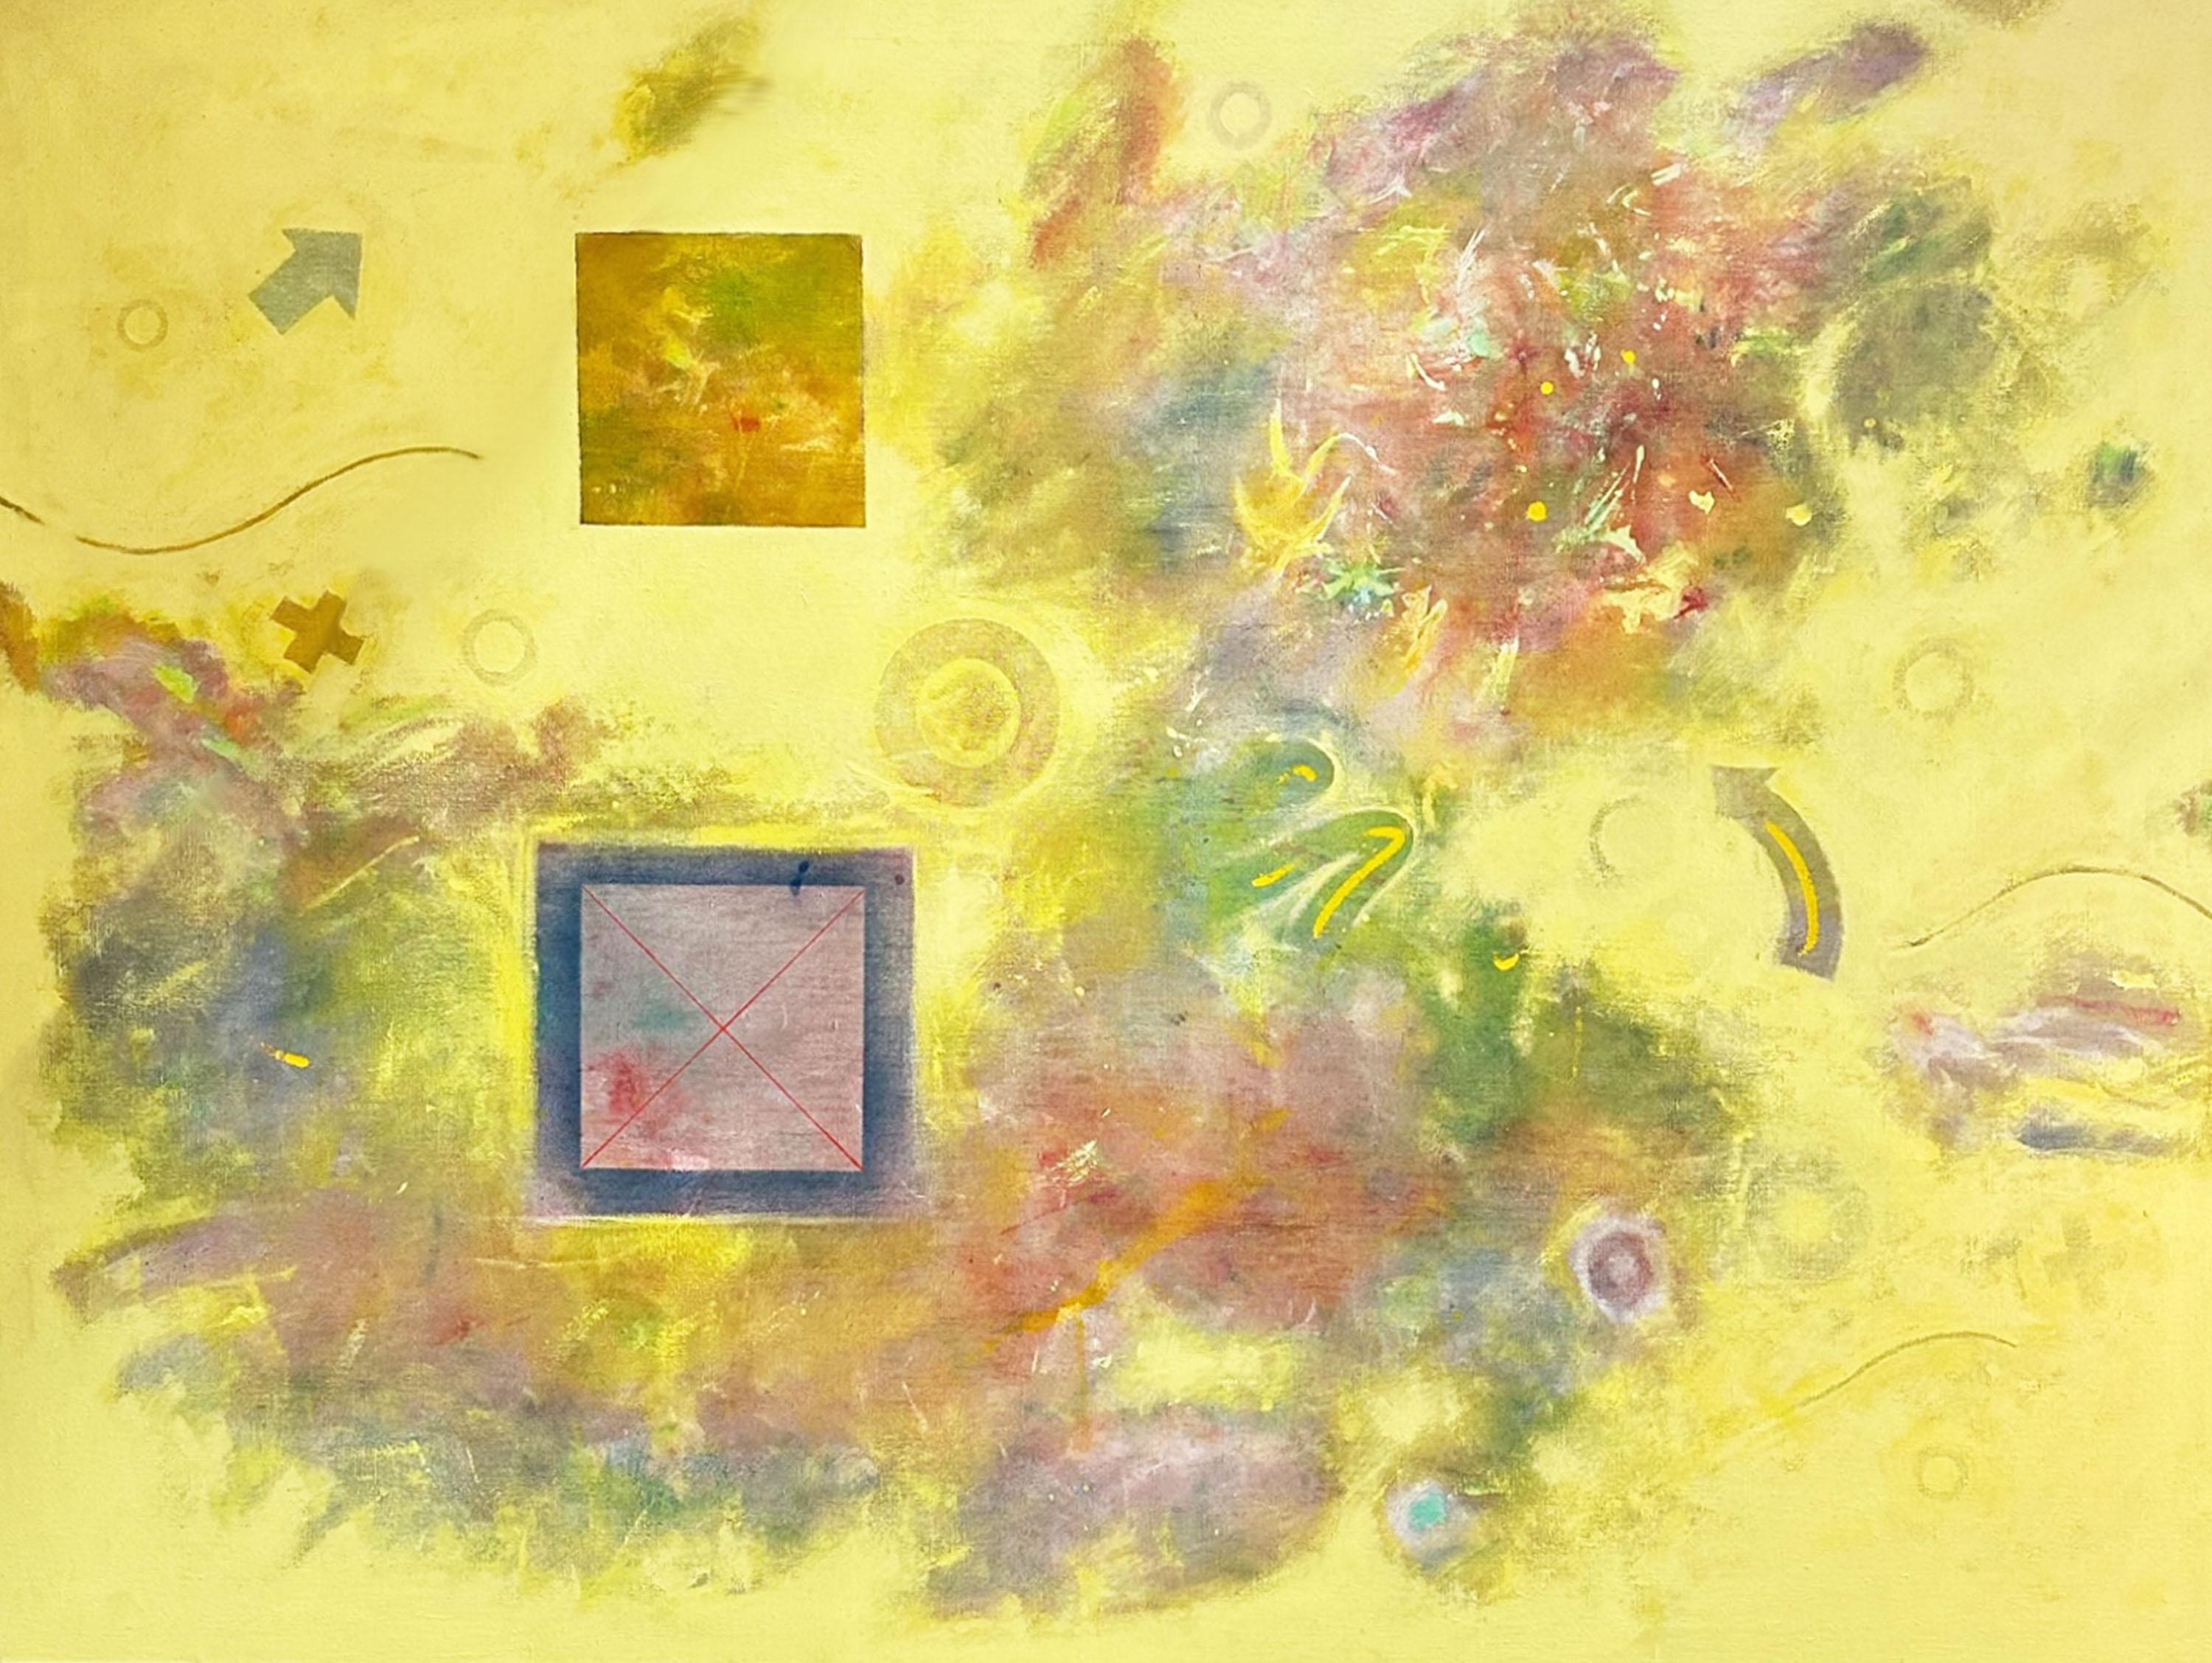 Ein Gemälde des amerikanischen Künstlers Robert Berkshire (1932-2010) von 1974 in Öl auf Leinwand. Dieses überwiegend gelbe Werk mit dem Titel 